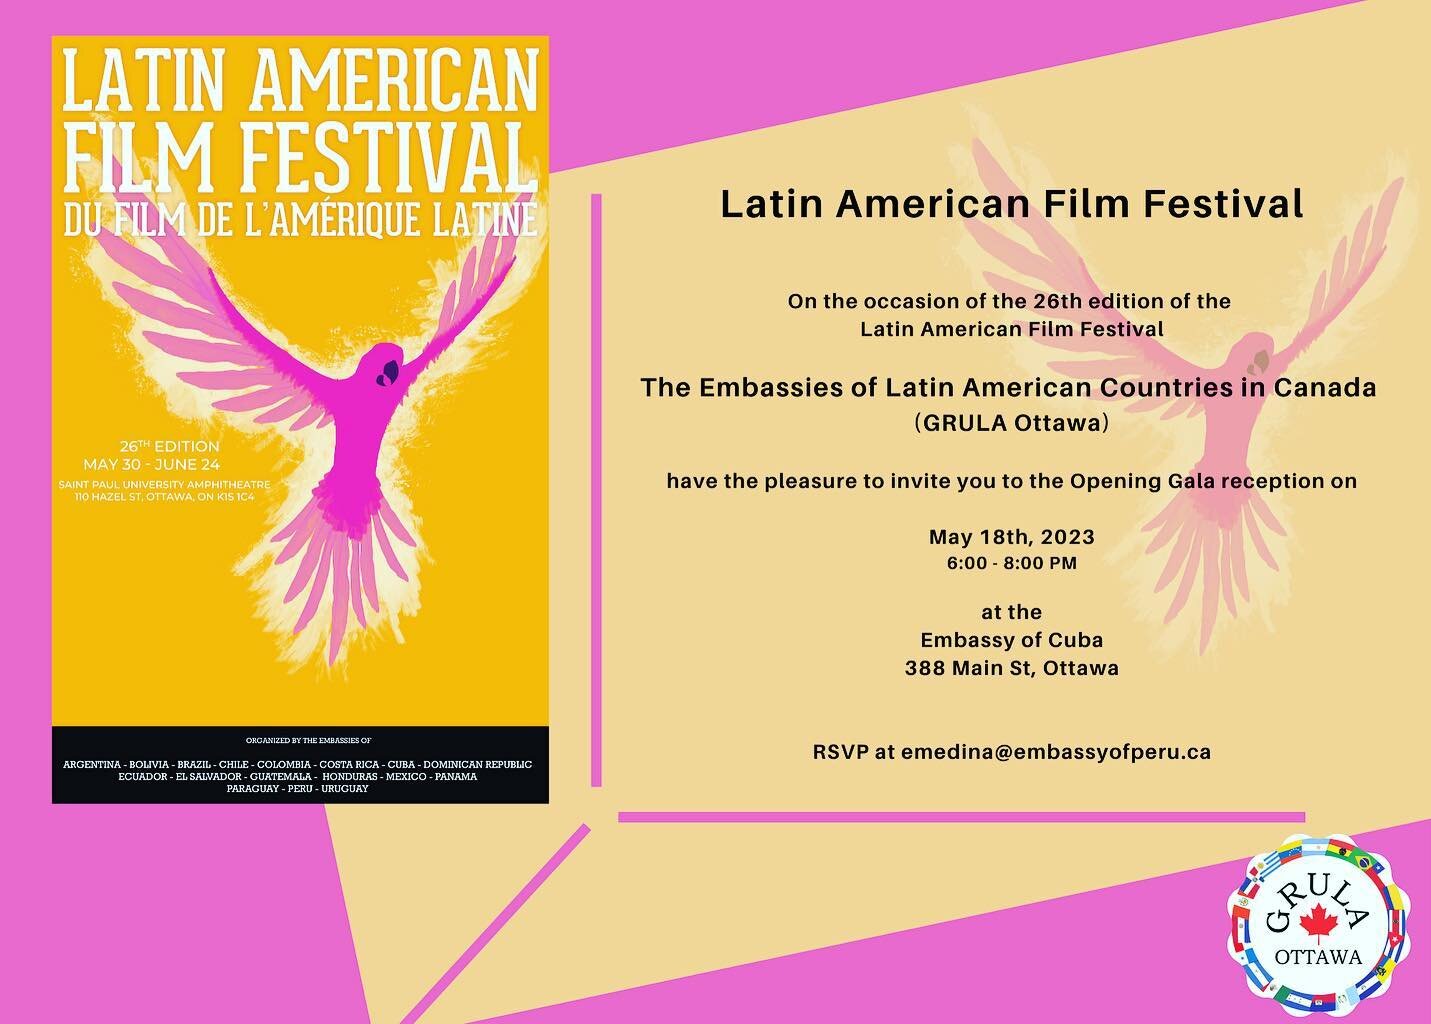 Latin American Film Festival 2023! #grula #latinamerica #todoslospaiseslatinos #noselopierdan‼️ #gr&aacute;tis #free #dontmissit